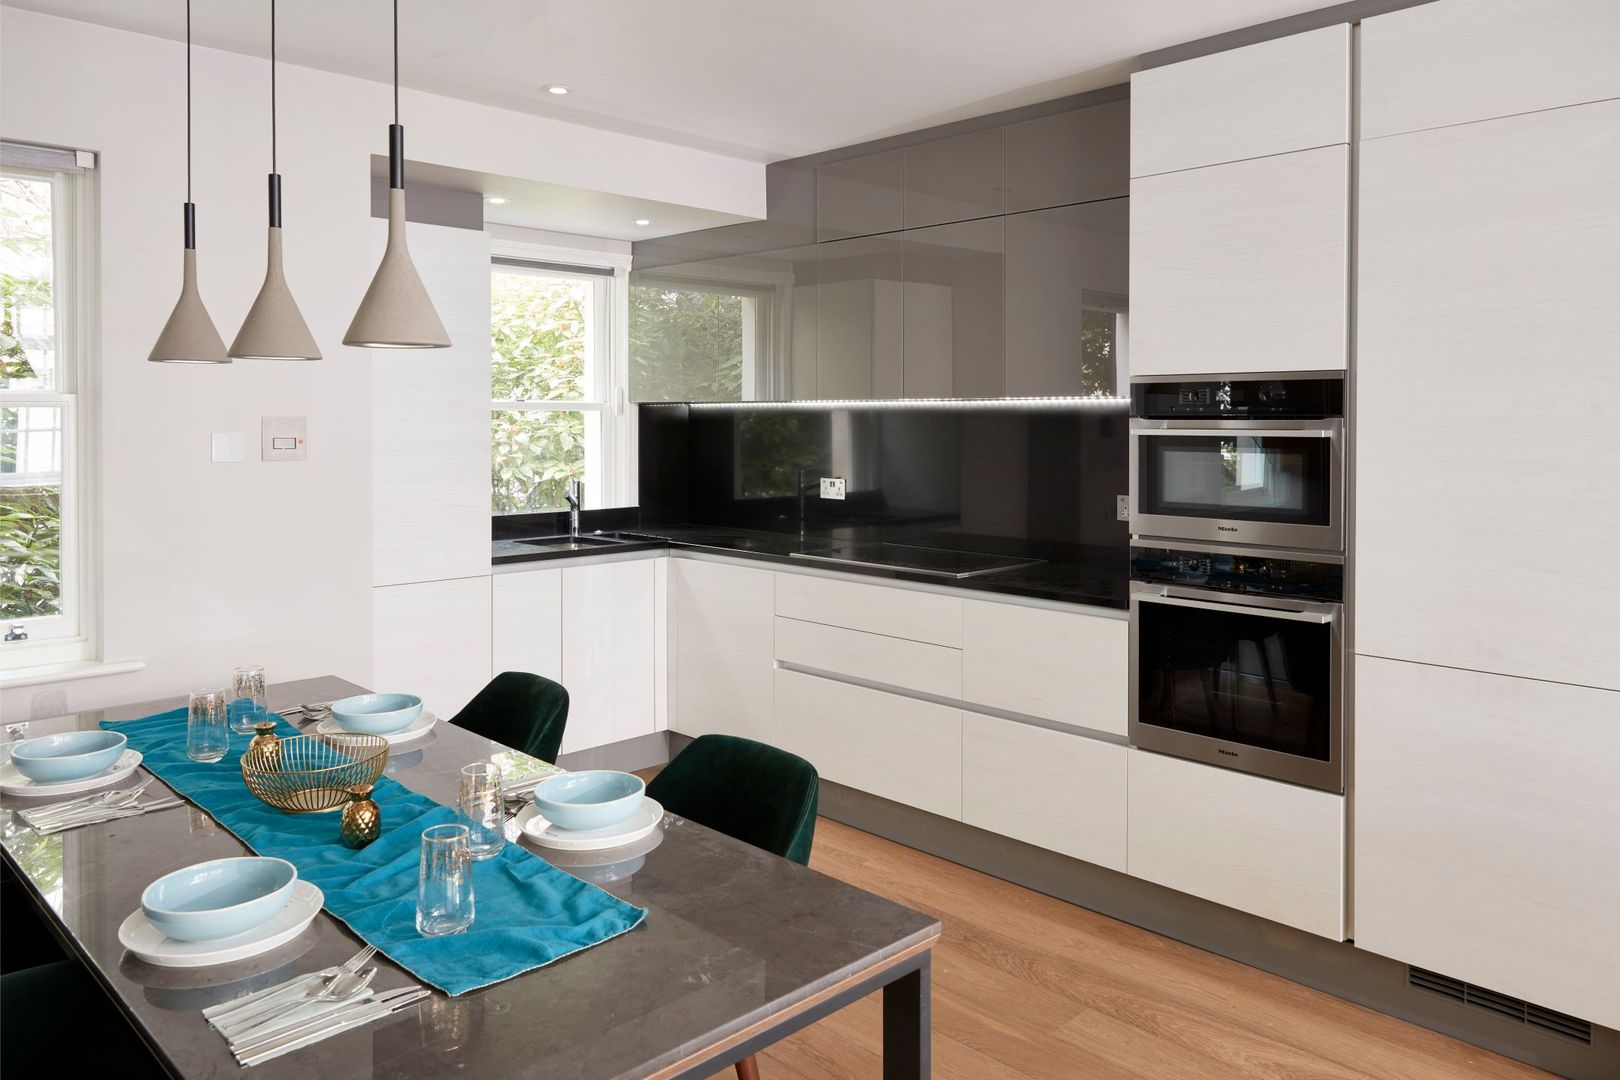 Smart kitchen and dining area Urbanist Architecture Вбудовані кухні Метал modern,kitchen